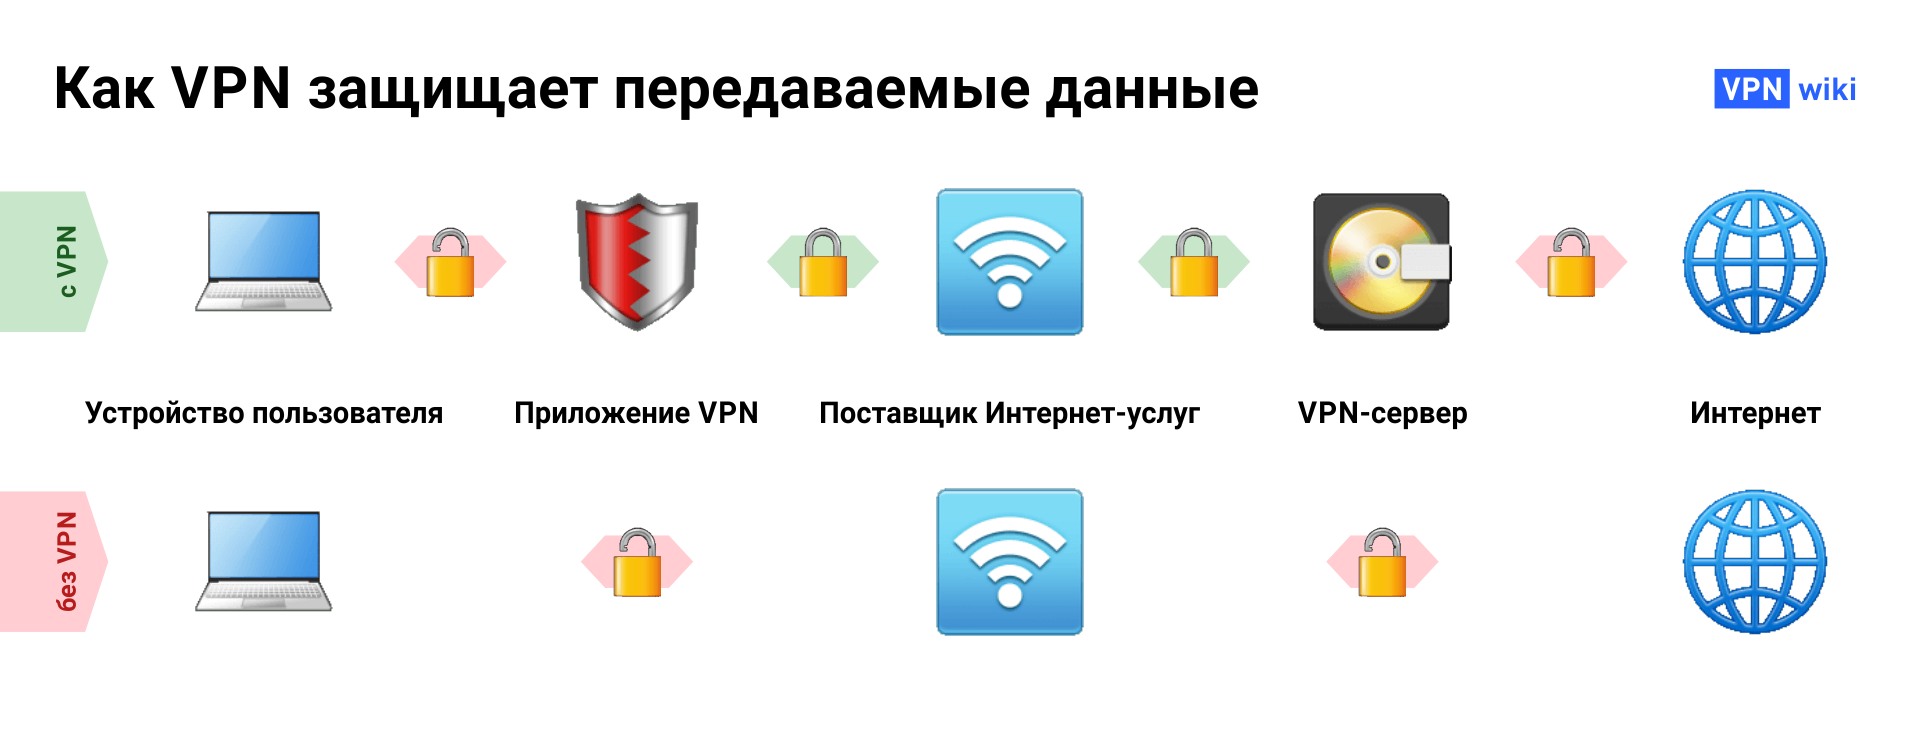 Что такое VPN и как она работает? 4 примера использования